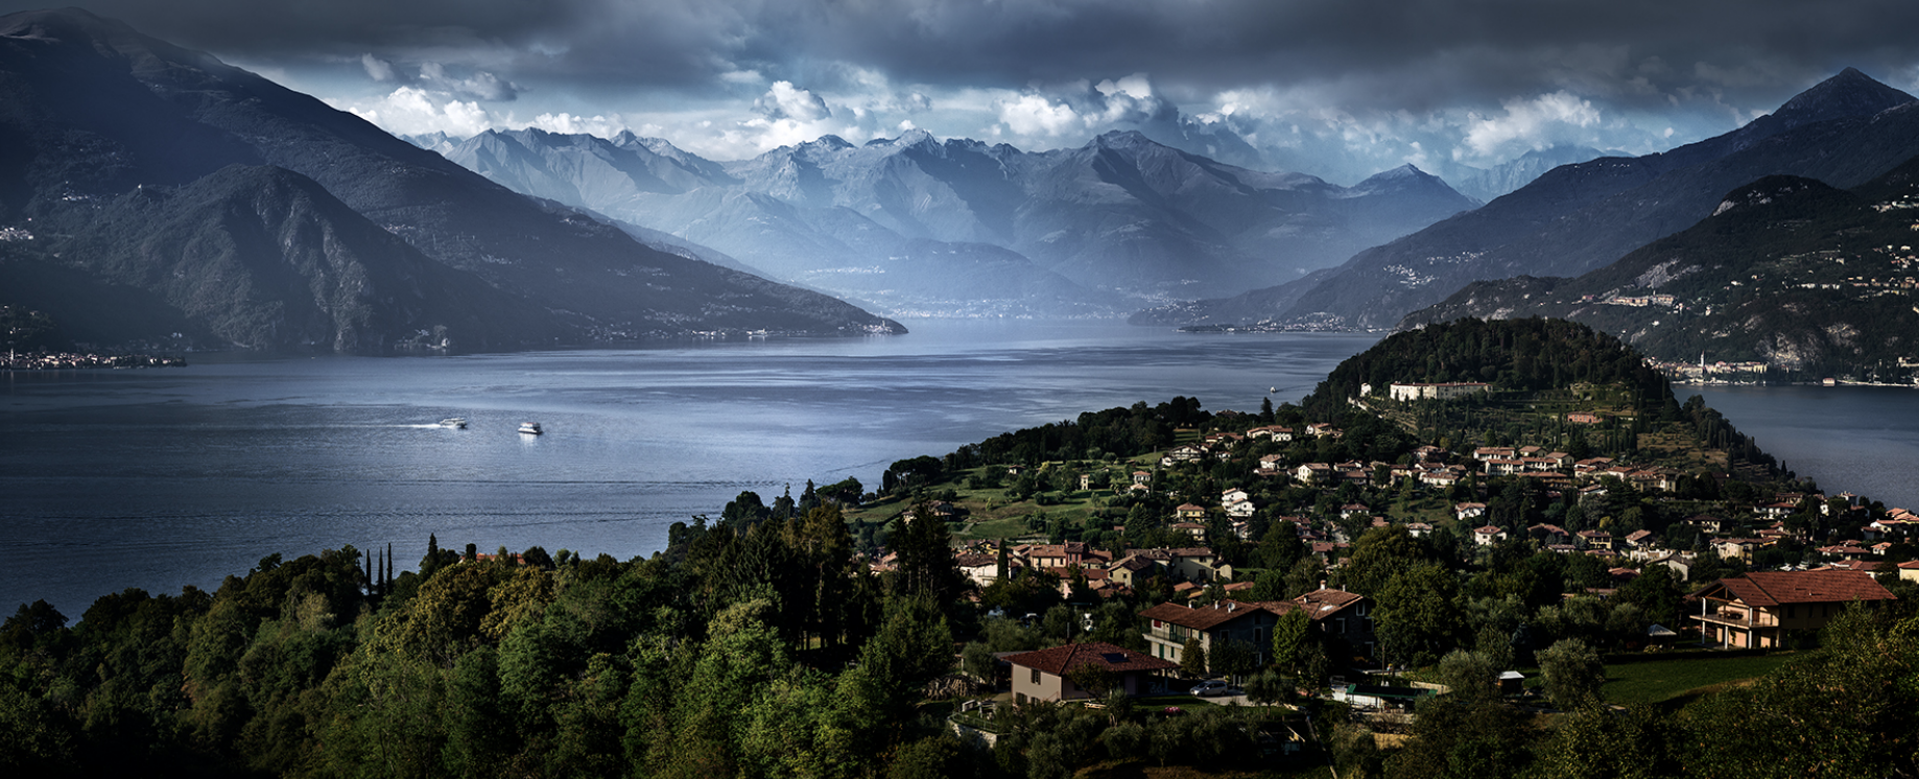 Escape to Lake Como by David Drebin